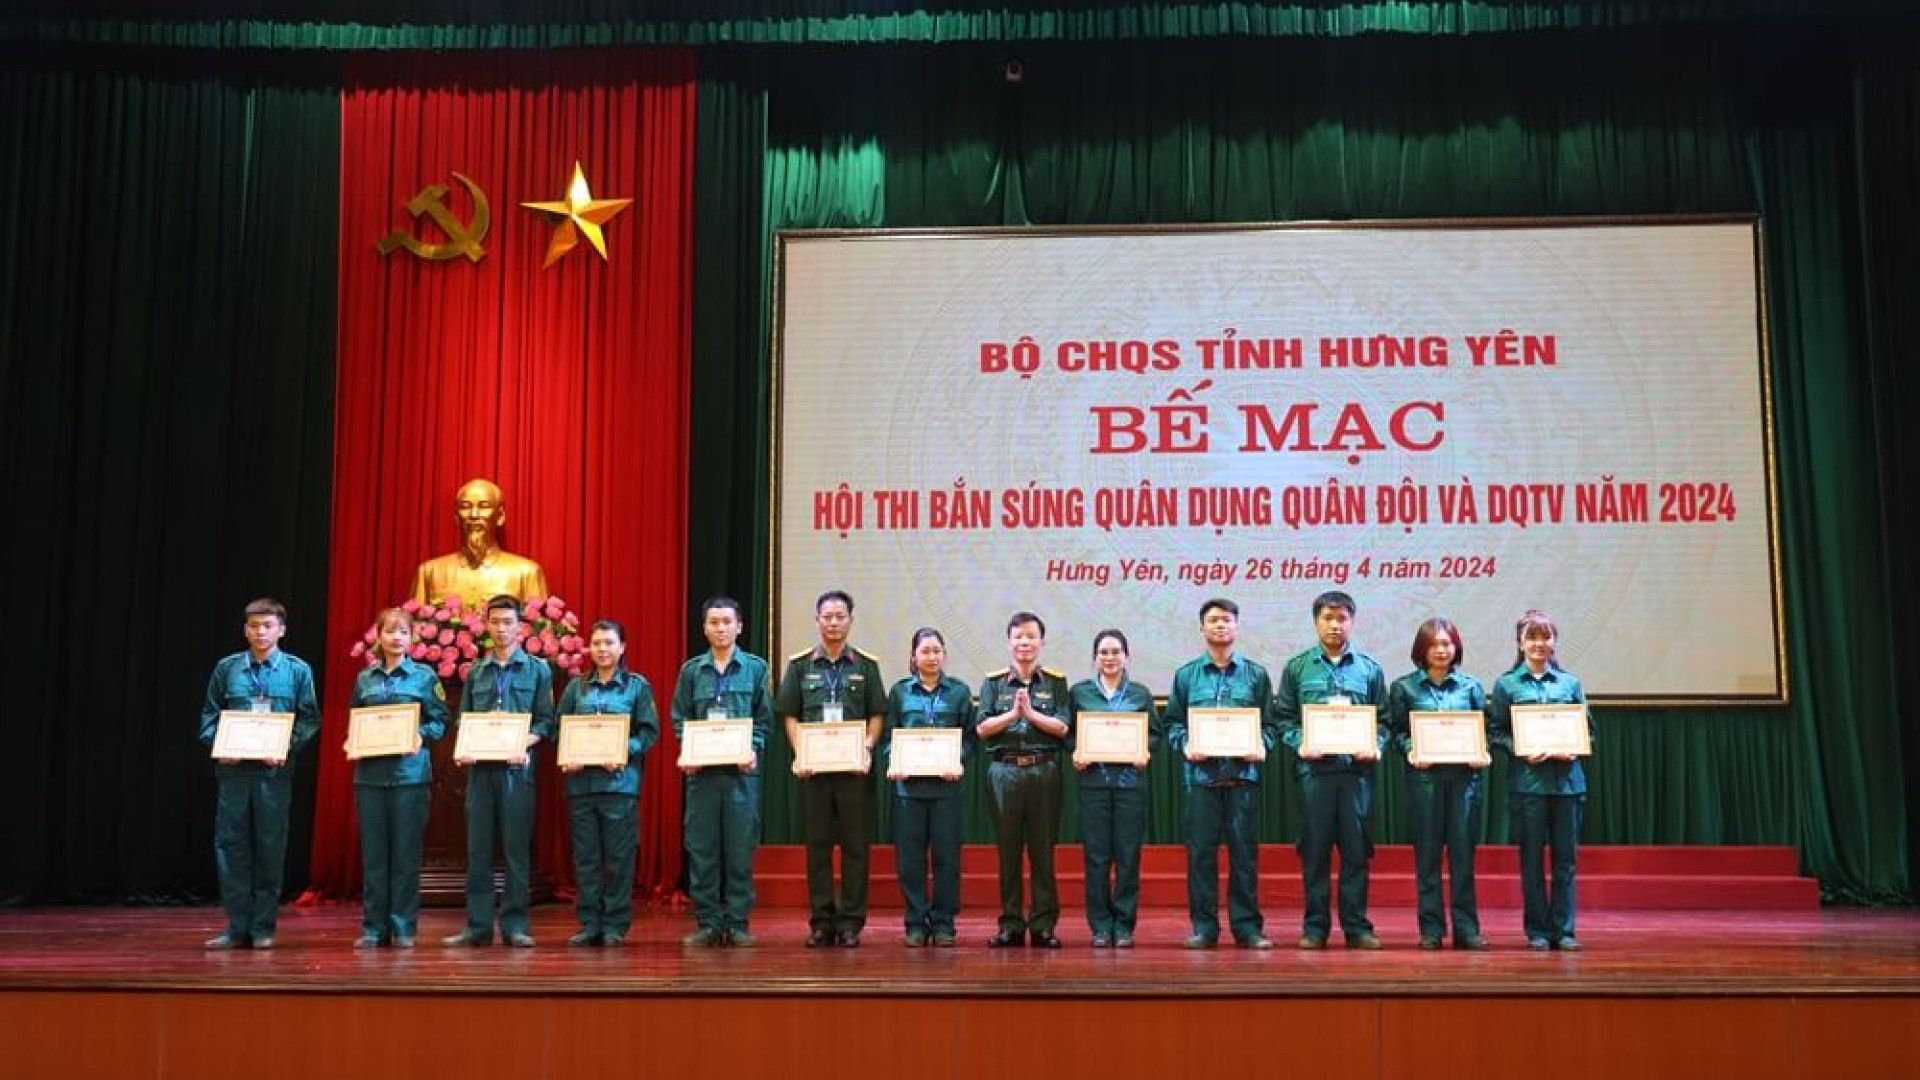 Bộ CHQS tỉnh Hưng Yên thi bắn súng quân dụng quân đội và dân quân tự vệ